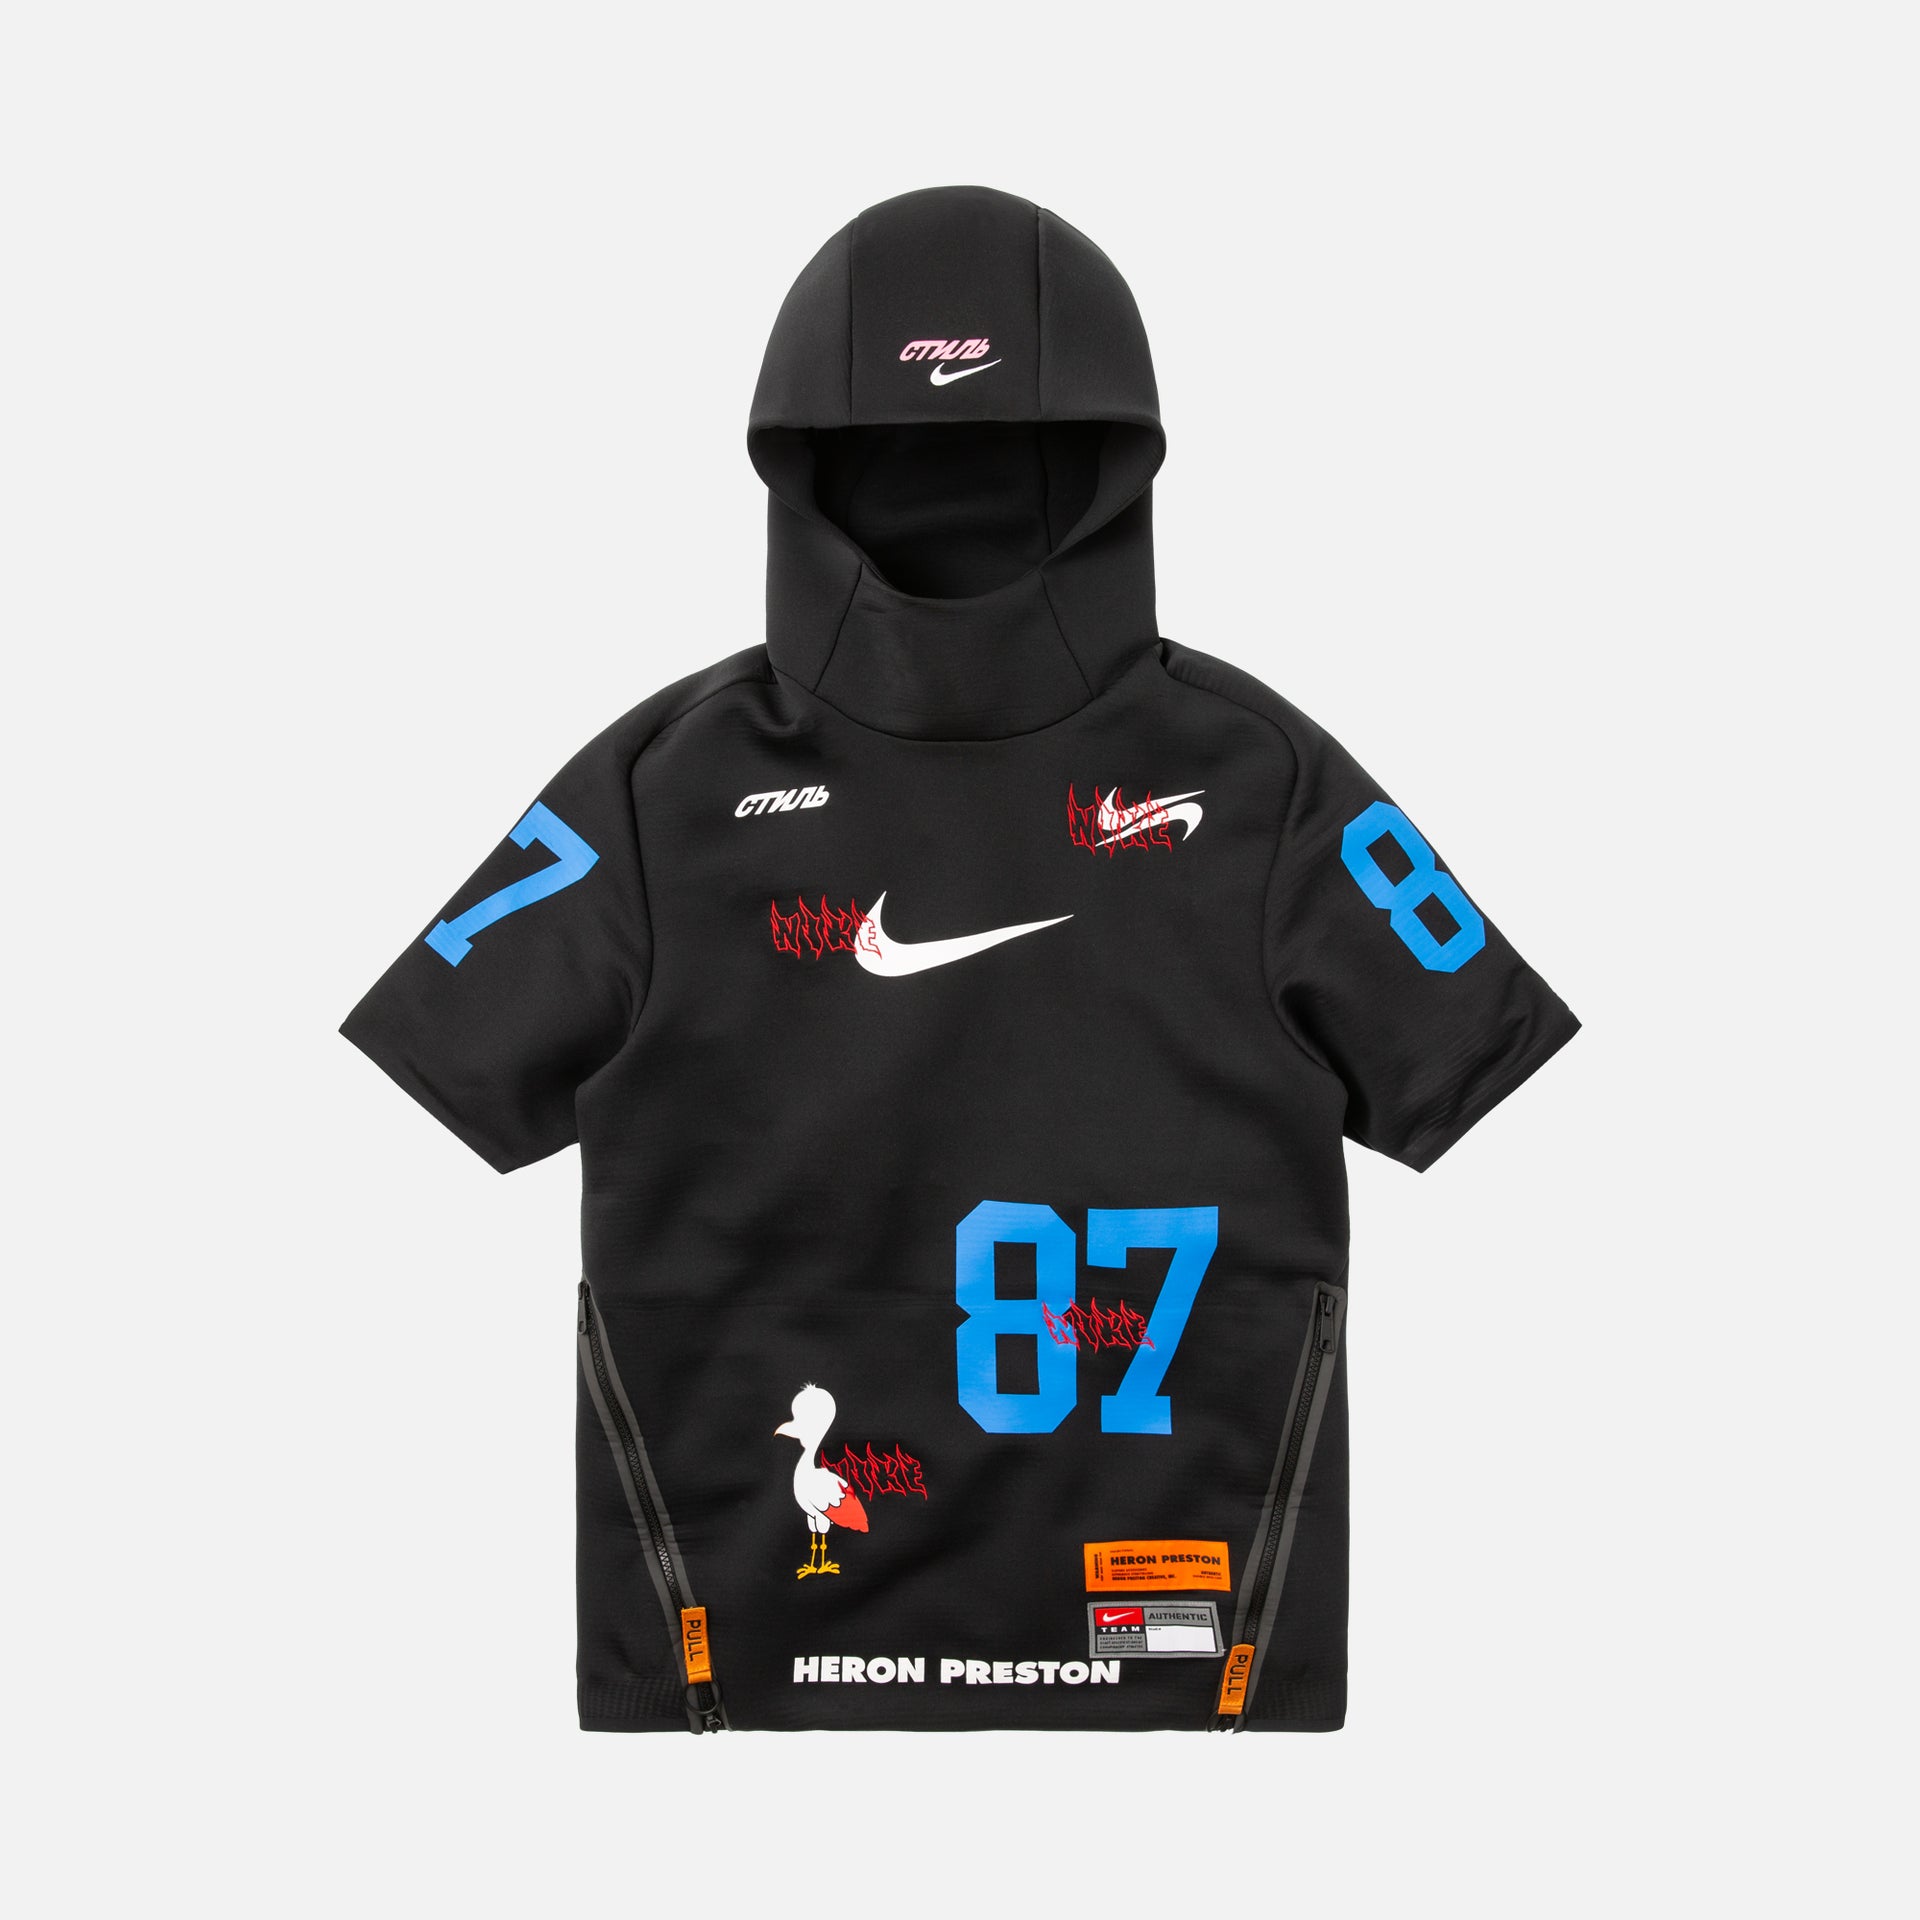 Nike x Heron Preston S/S Jacket Opt 1 - Black / White